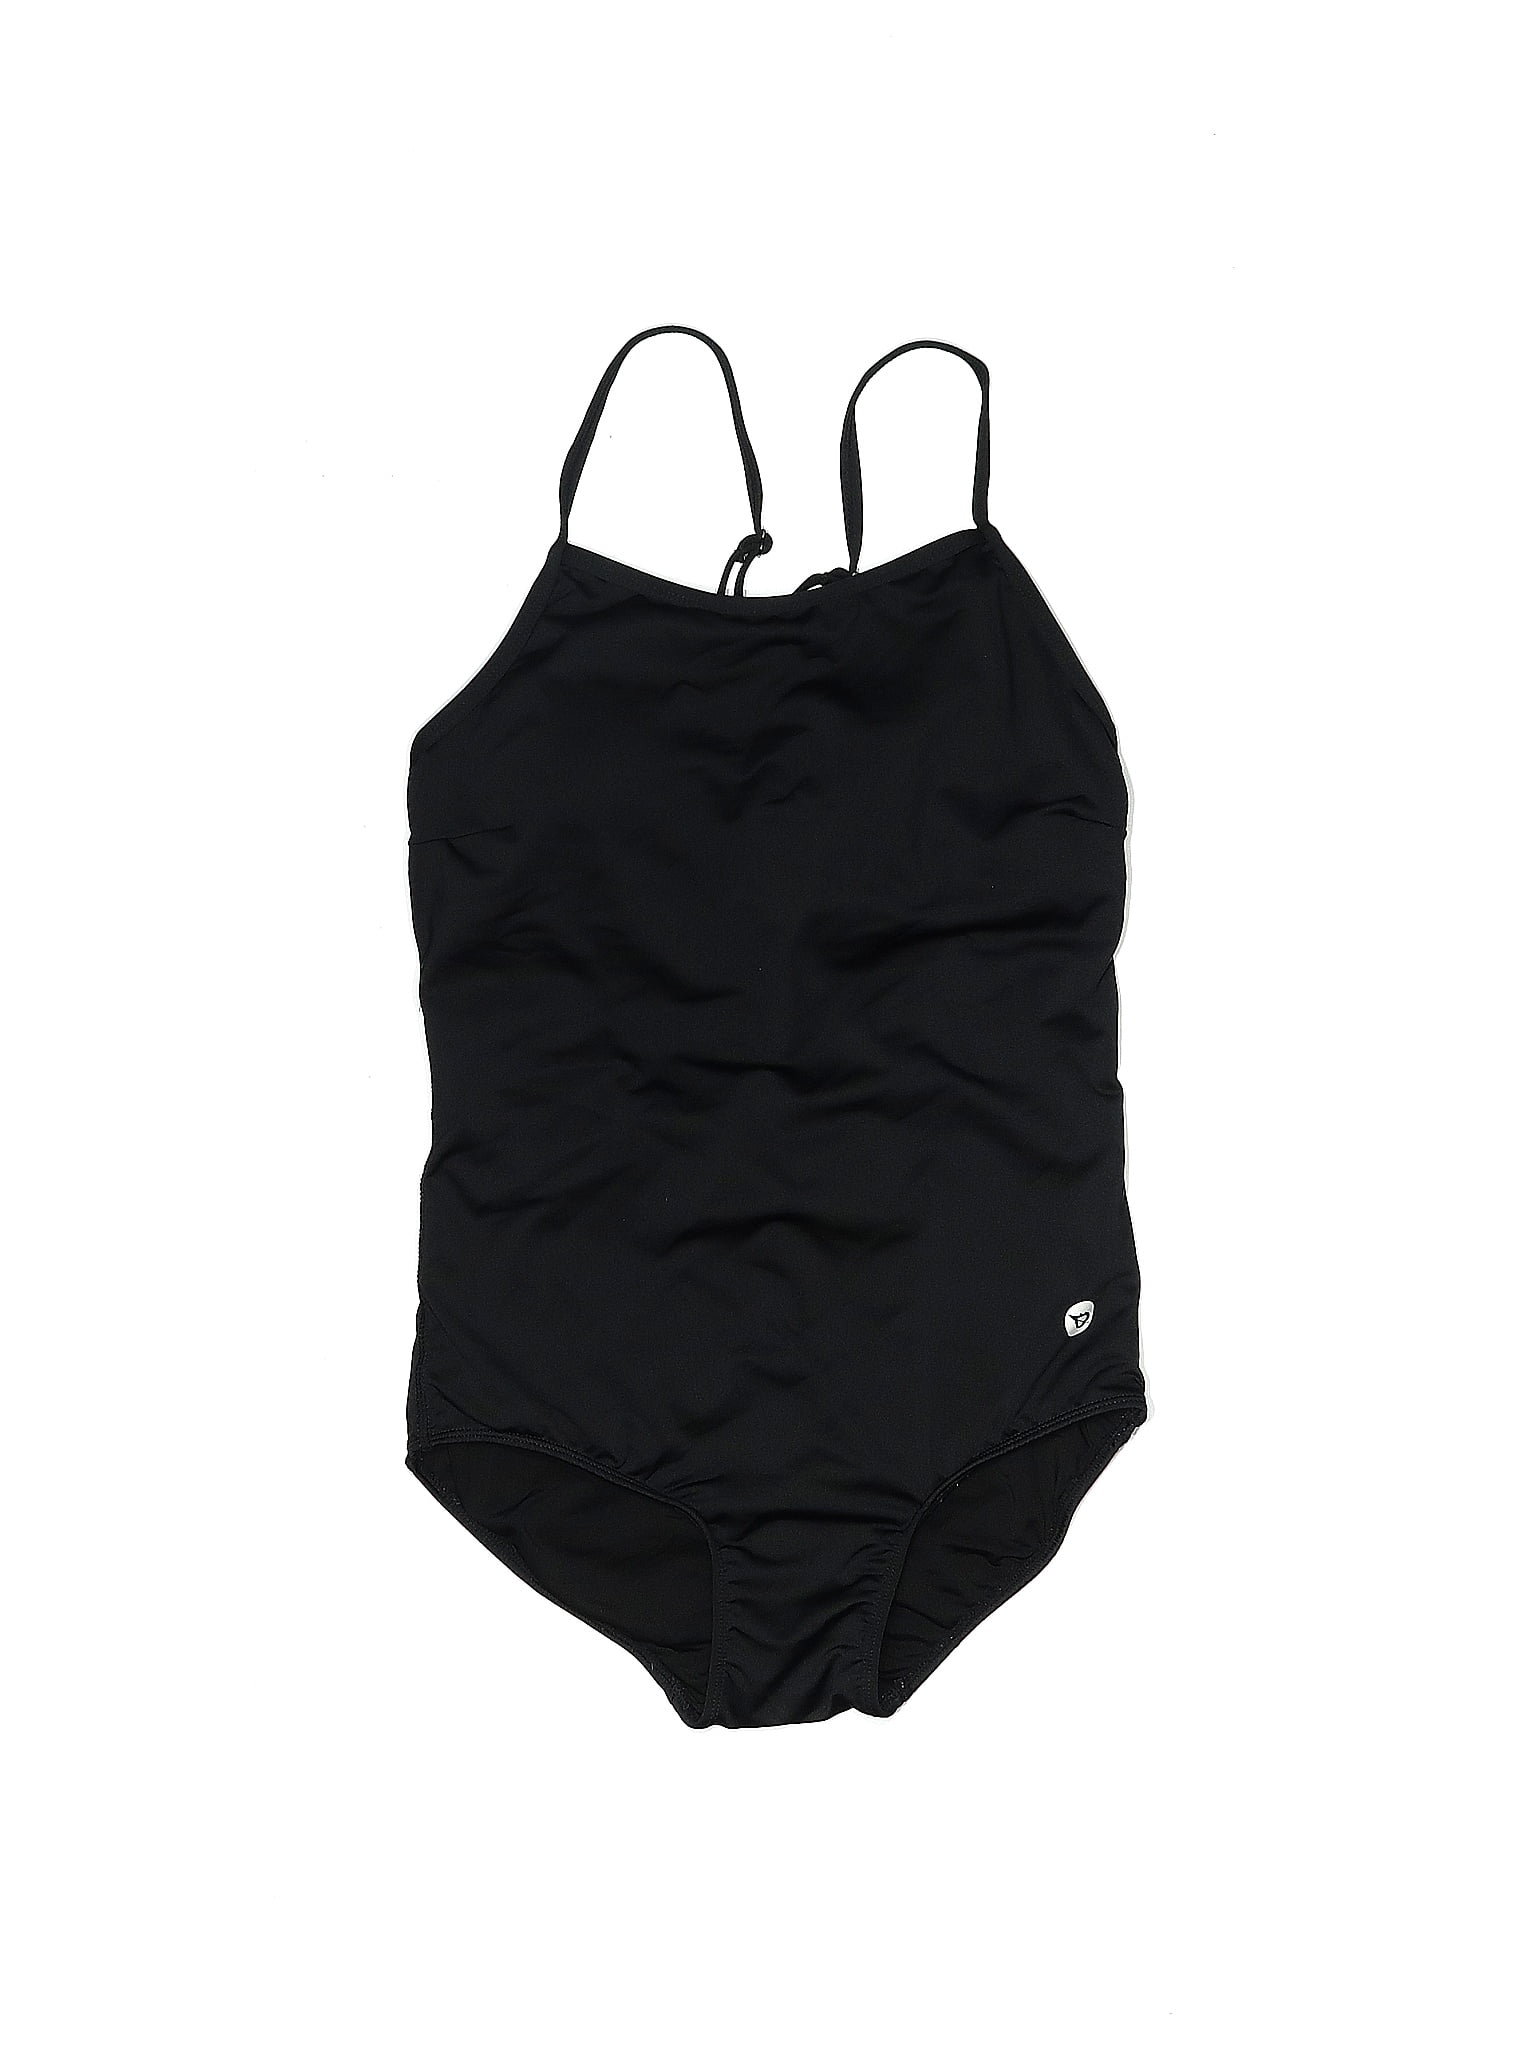 Baleaf Sports Women's Swimwear On Sale Up To 90% Off Retail | thredUP